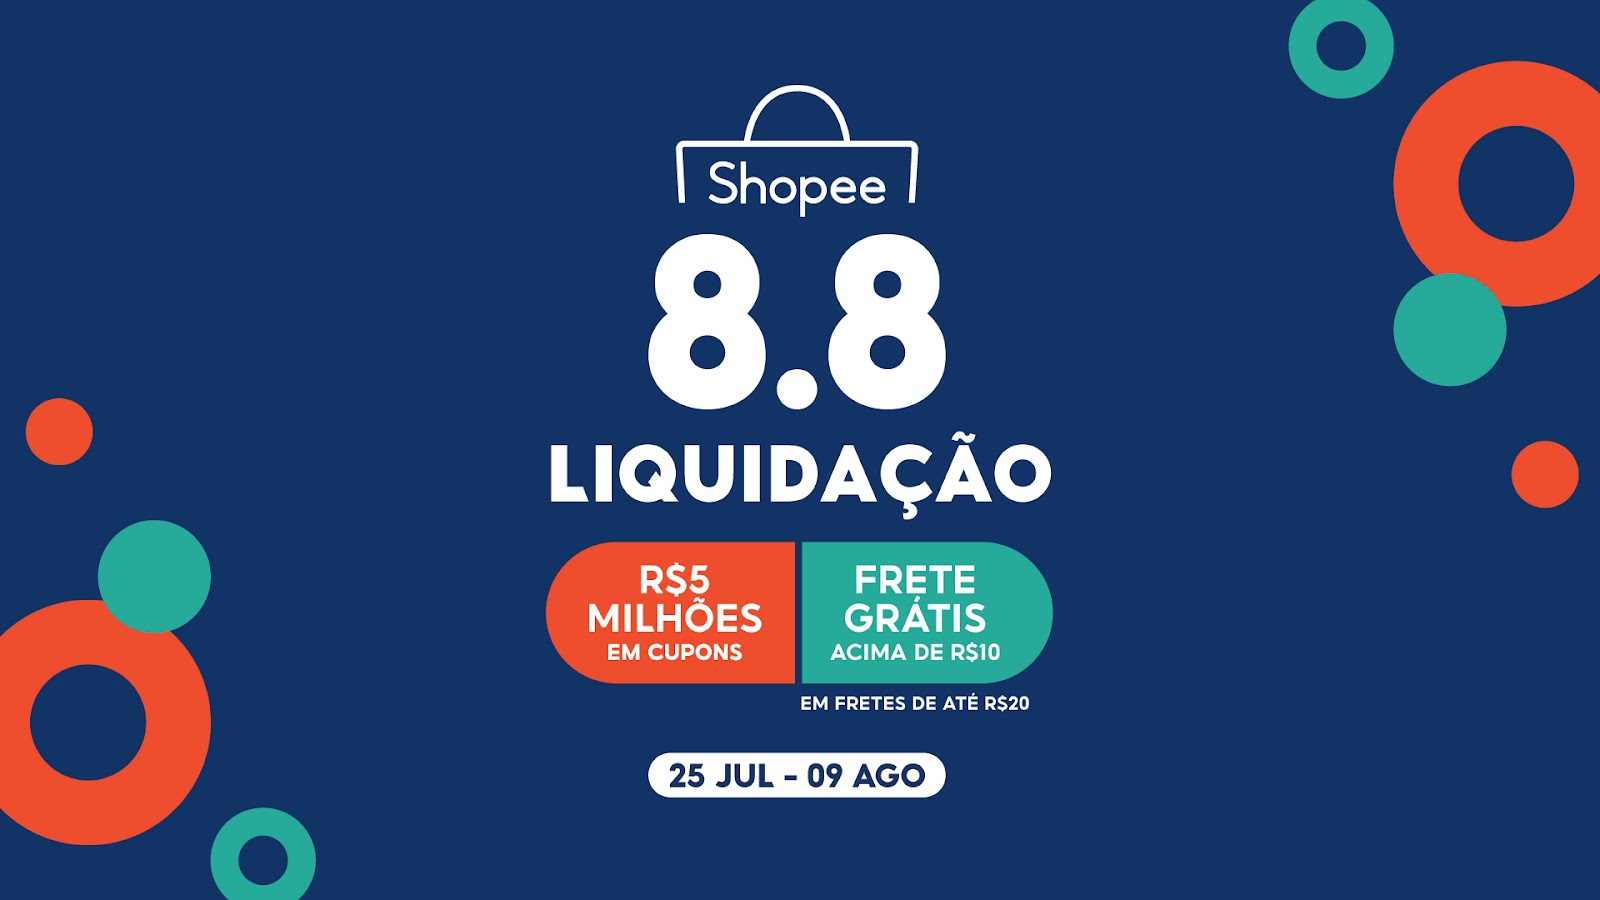 Shopee Brasil  Ofertas incríveis. Melhores preços do mercado